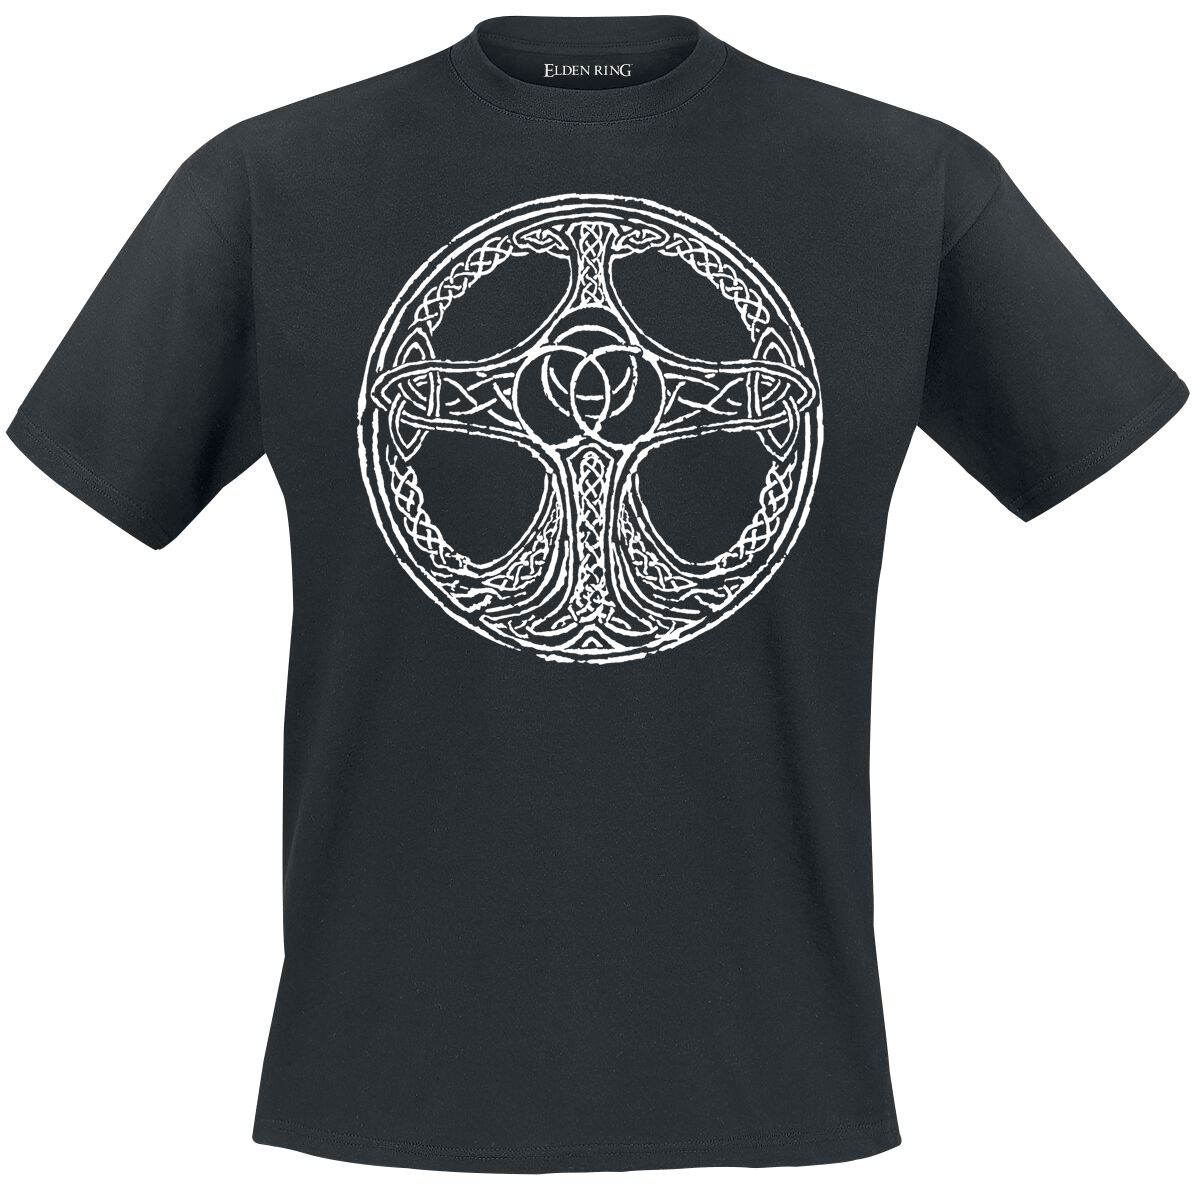 Elden Ring - Gaming T-Shirt - Erdtree - S bis XXL - für Männer - Größe S - schwarz  - EMP exklusives Merchandise!